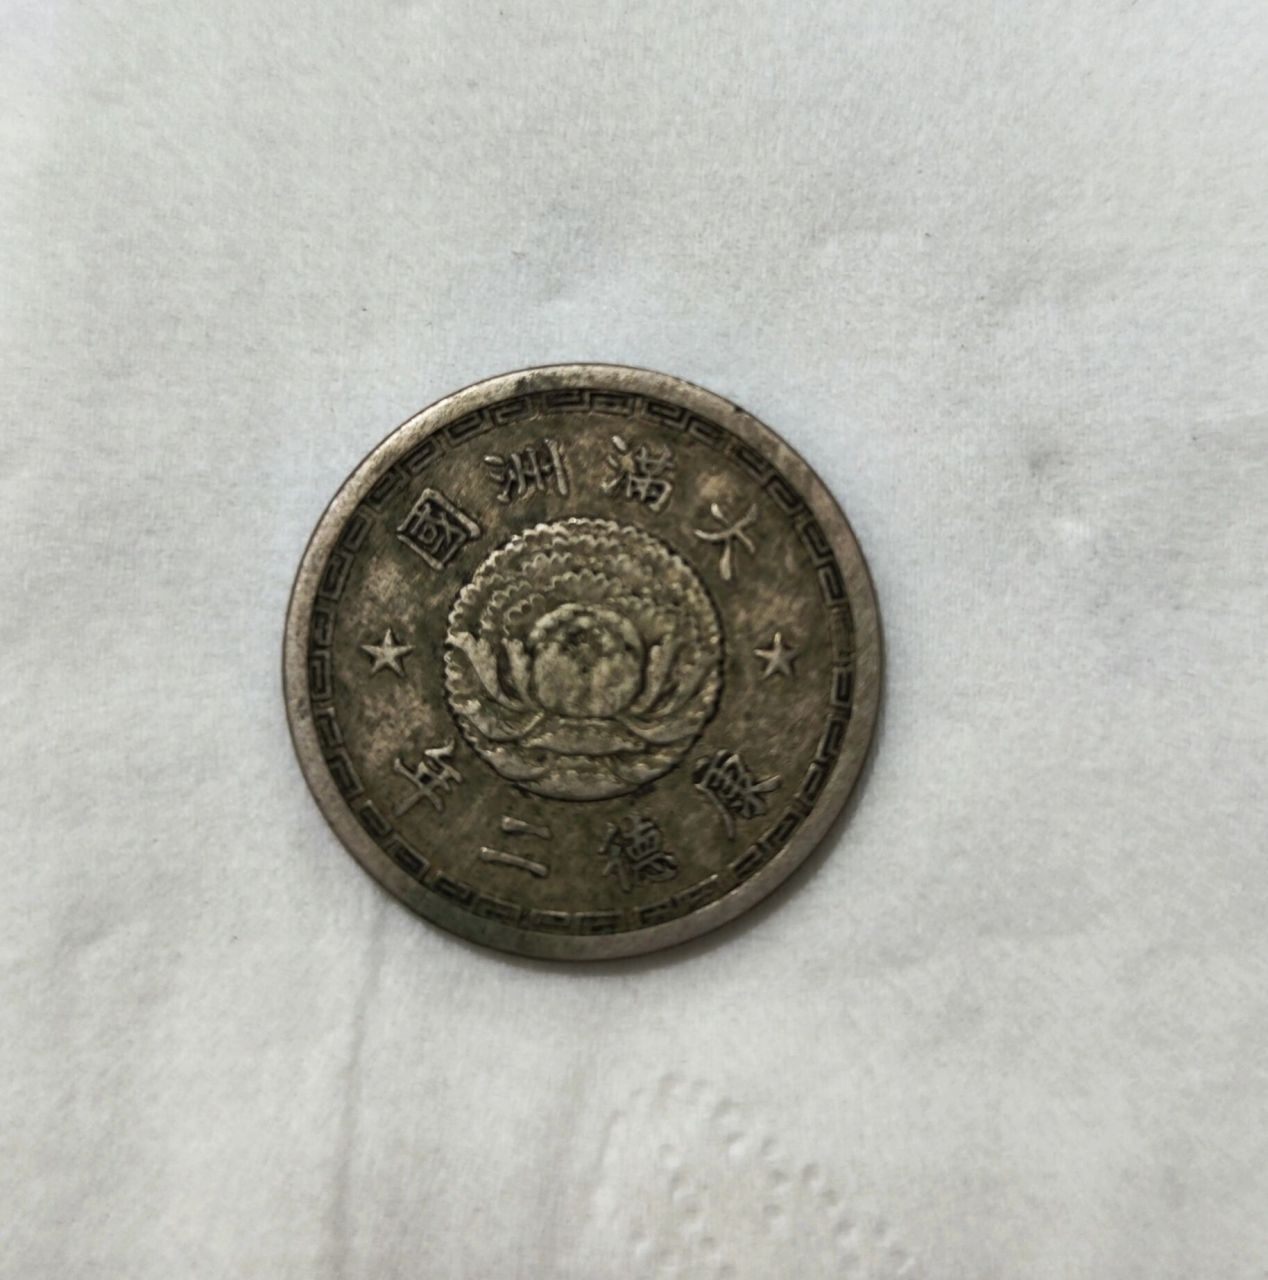 大满洲国1角硬币图片